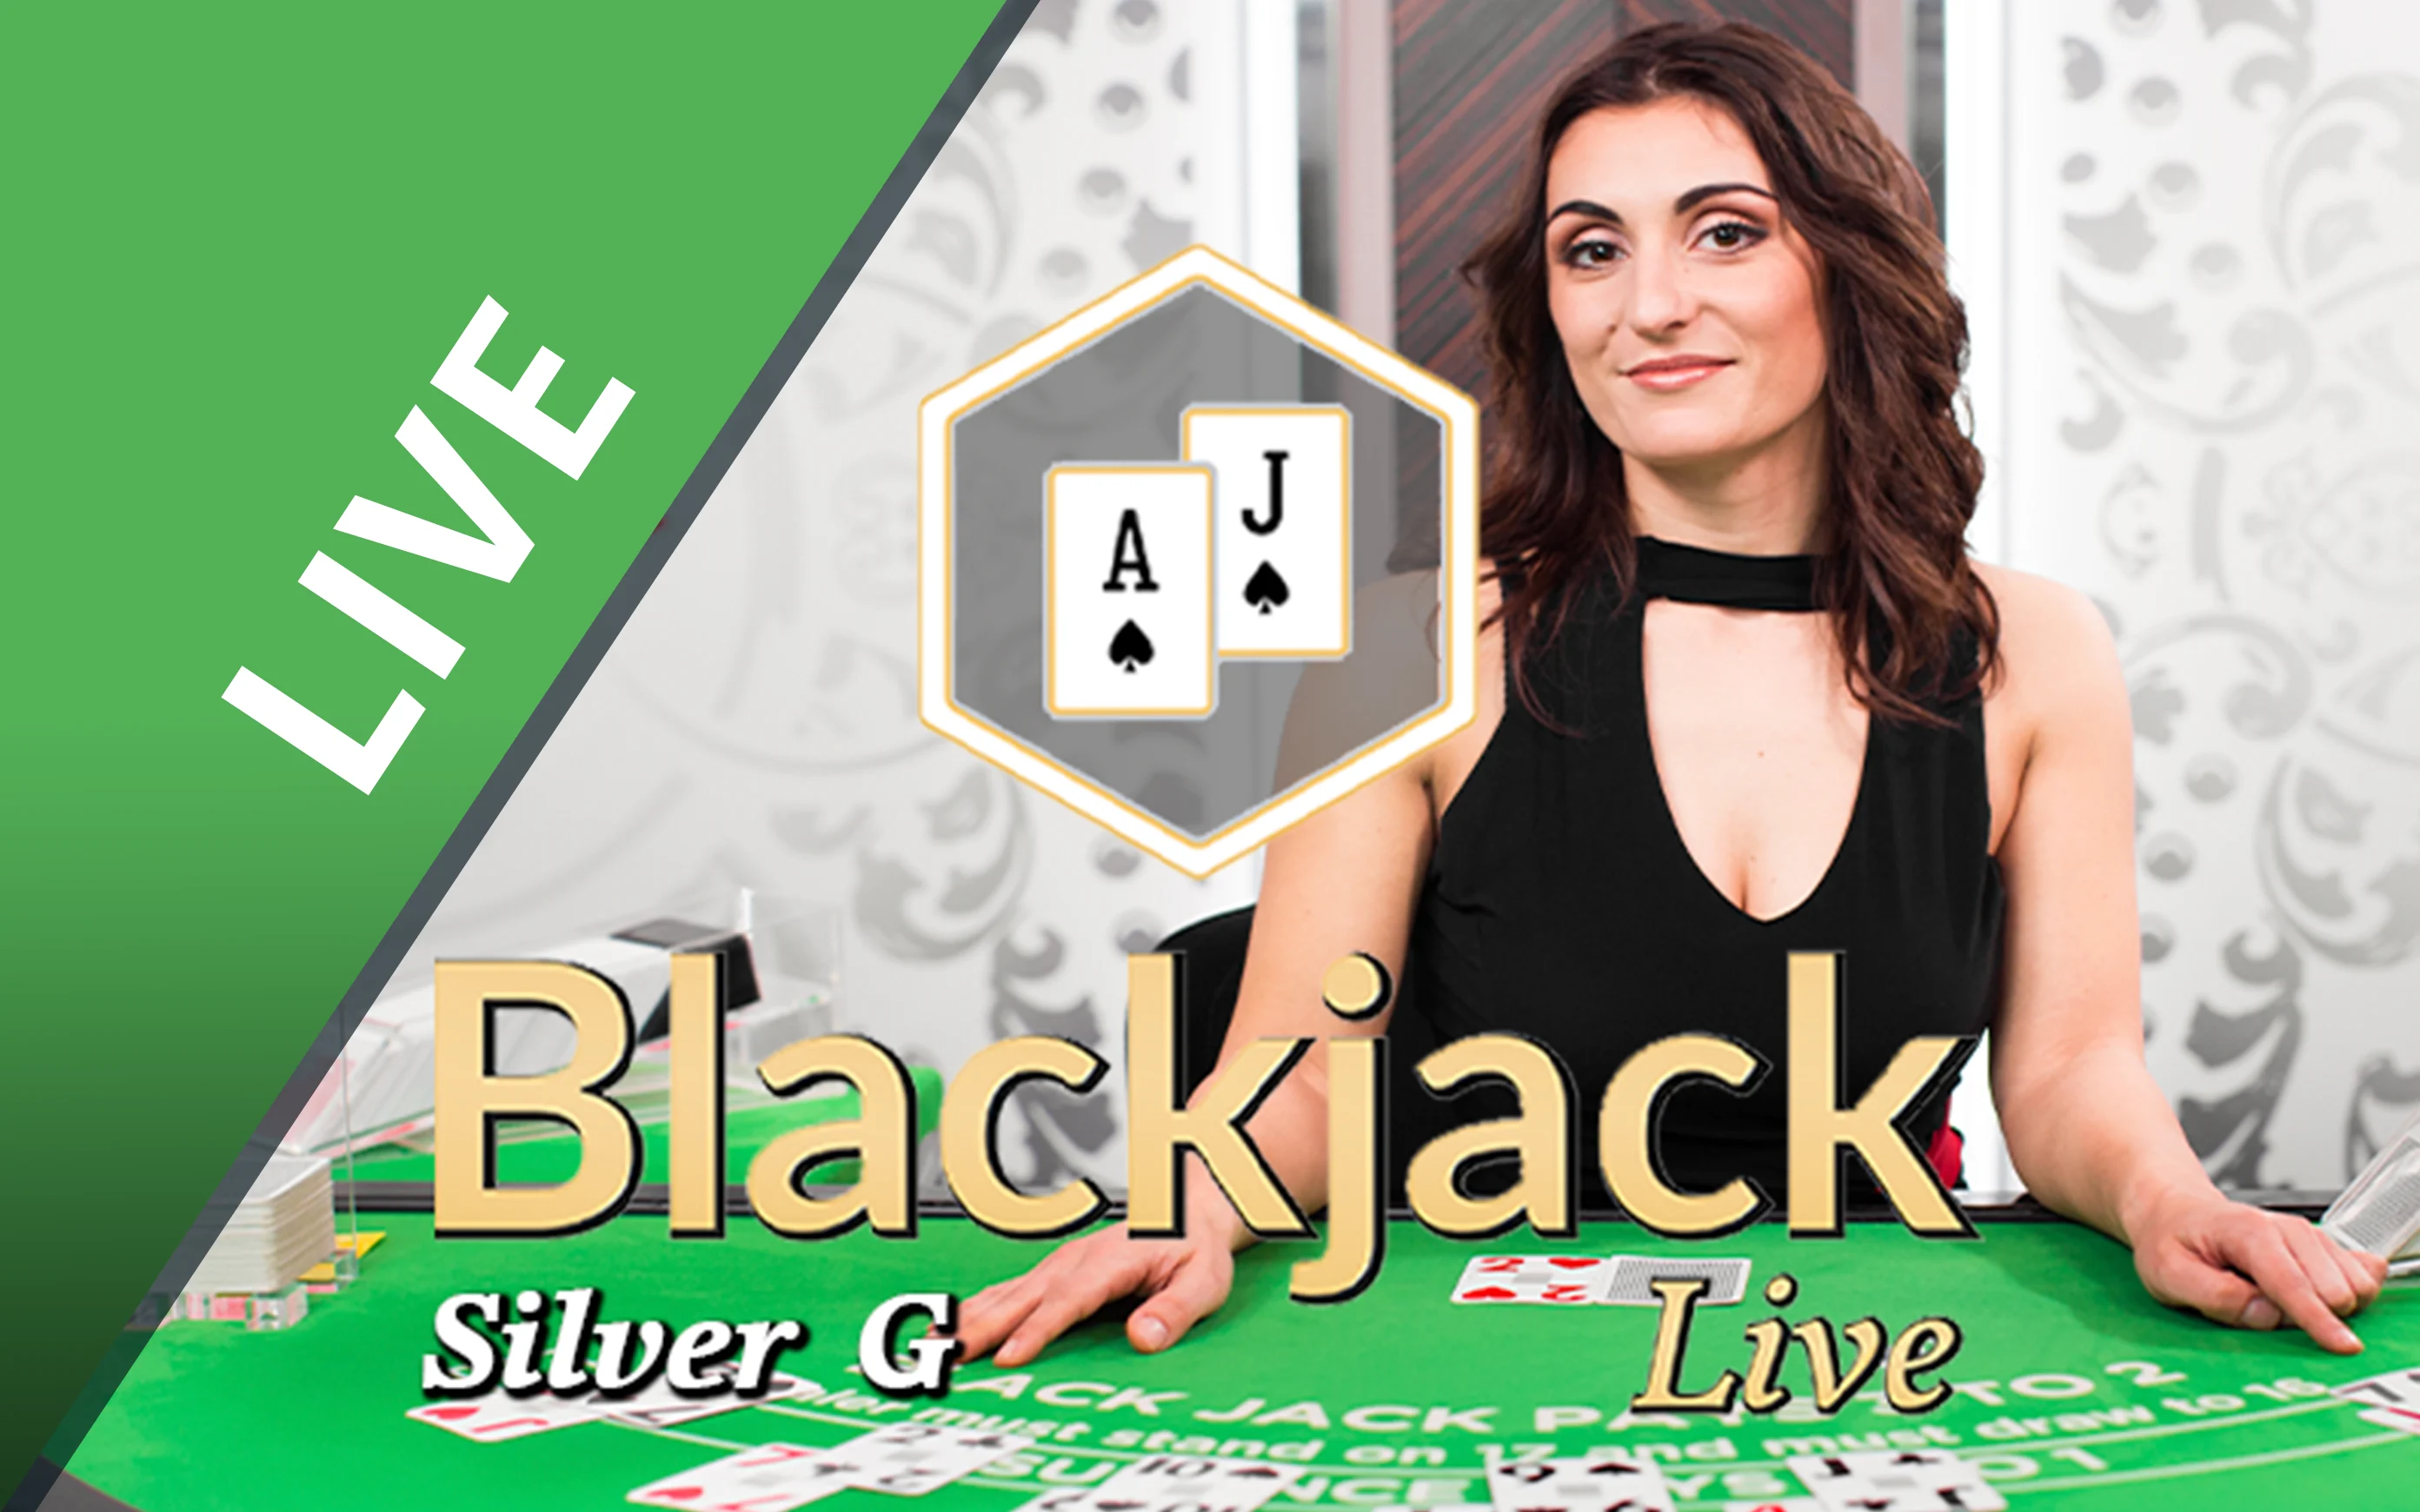 Gioca a Blackjack Silver G sul casino online Starcasino.be